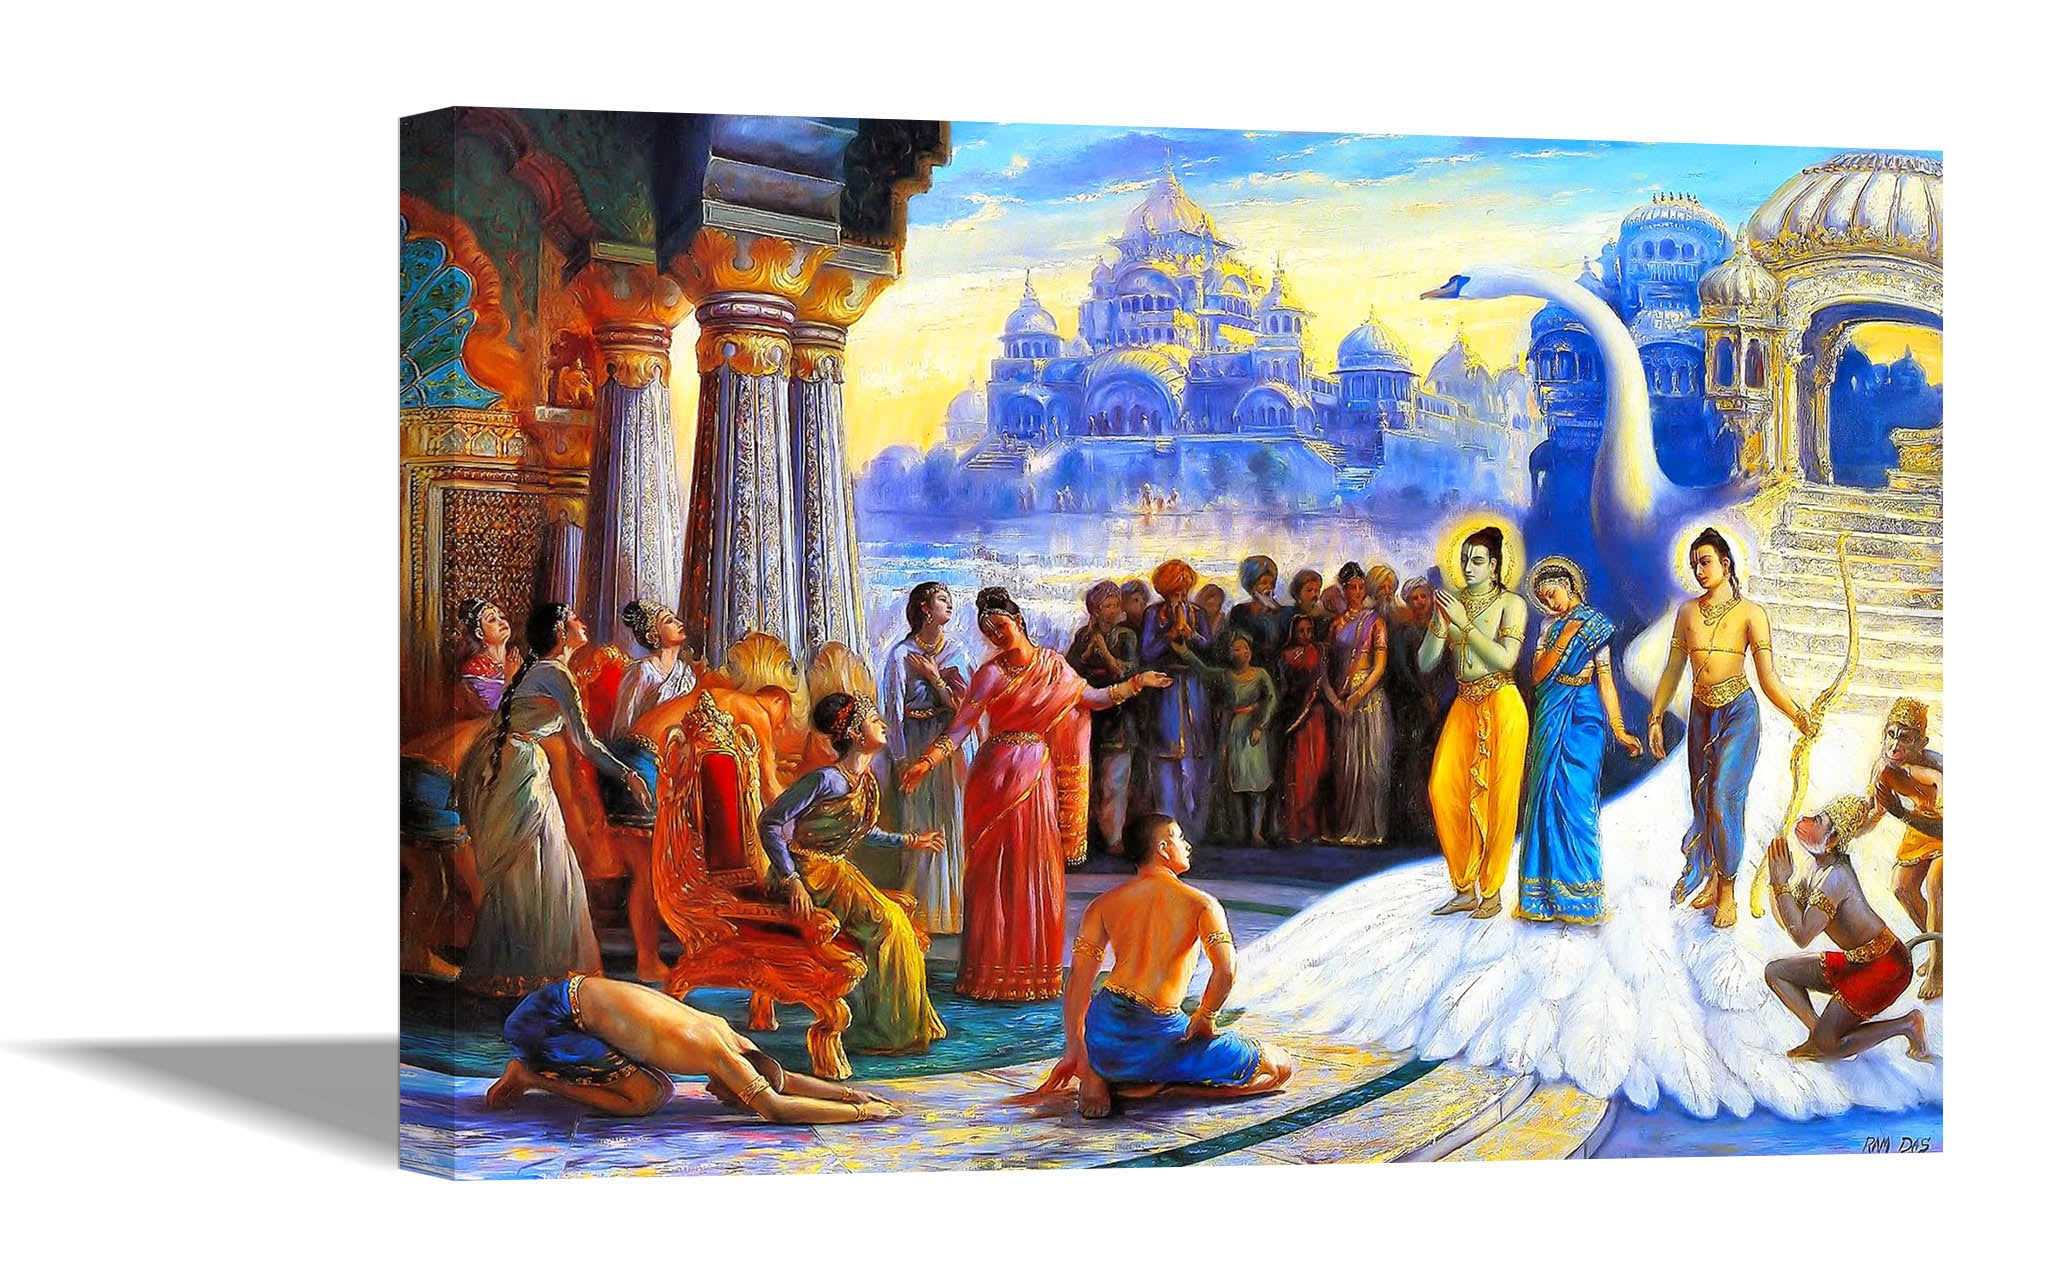 Lord Ram & Sita Return to Ayodhya